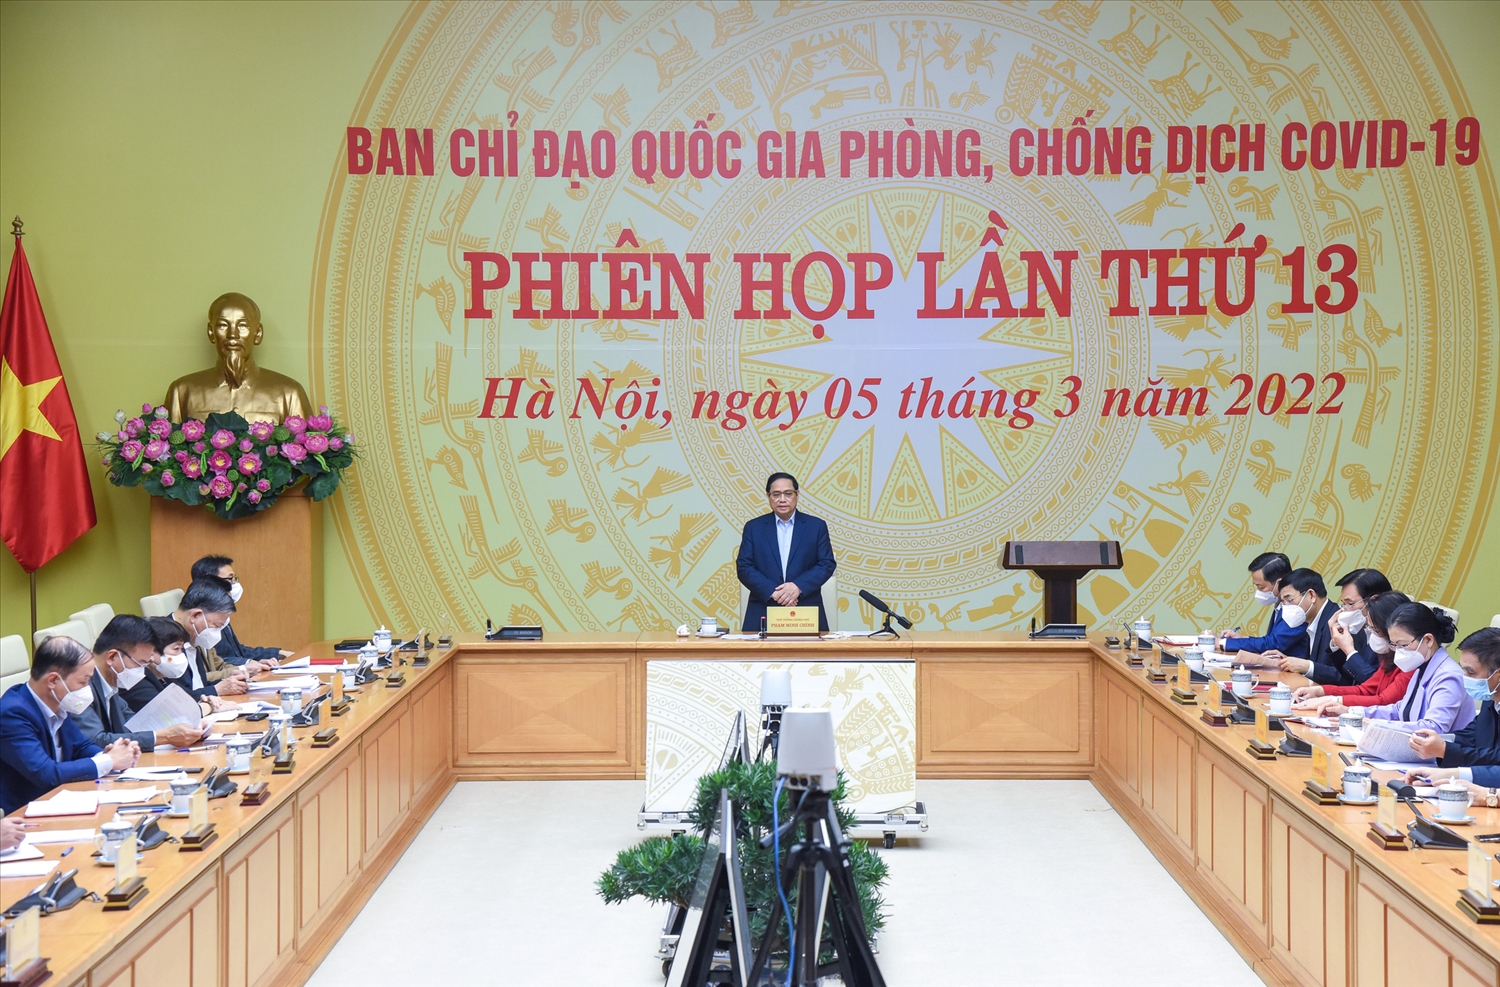  Thủ tướng Chính phủ Phạm Minh Chính, Trưởng Ban Chỉ đạo quốc gia phòng, chống dịch COVID-19 chủ trì phiên họp lần thứ 13 của Ban Chỉ đạo - Ảnh: VGP/Nhật Bắc